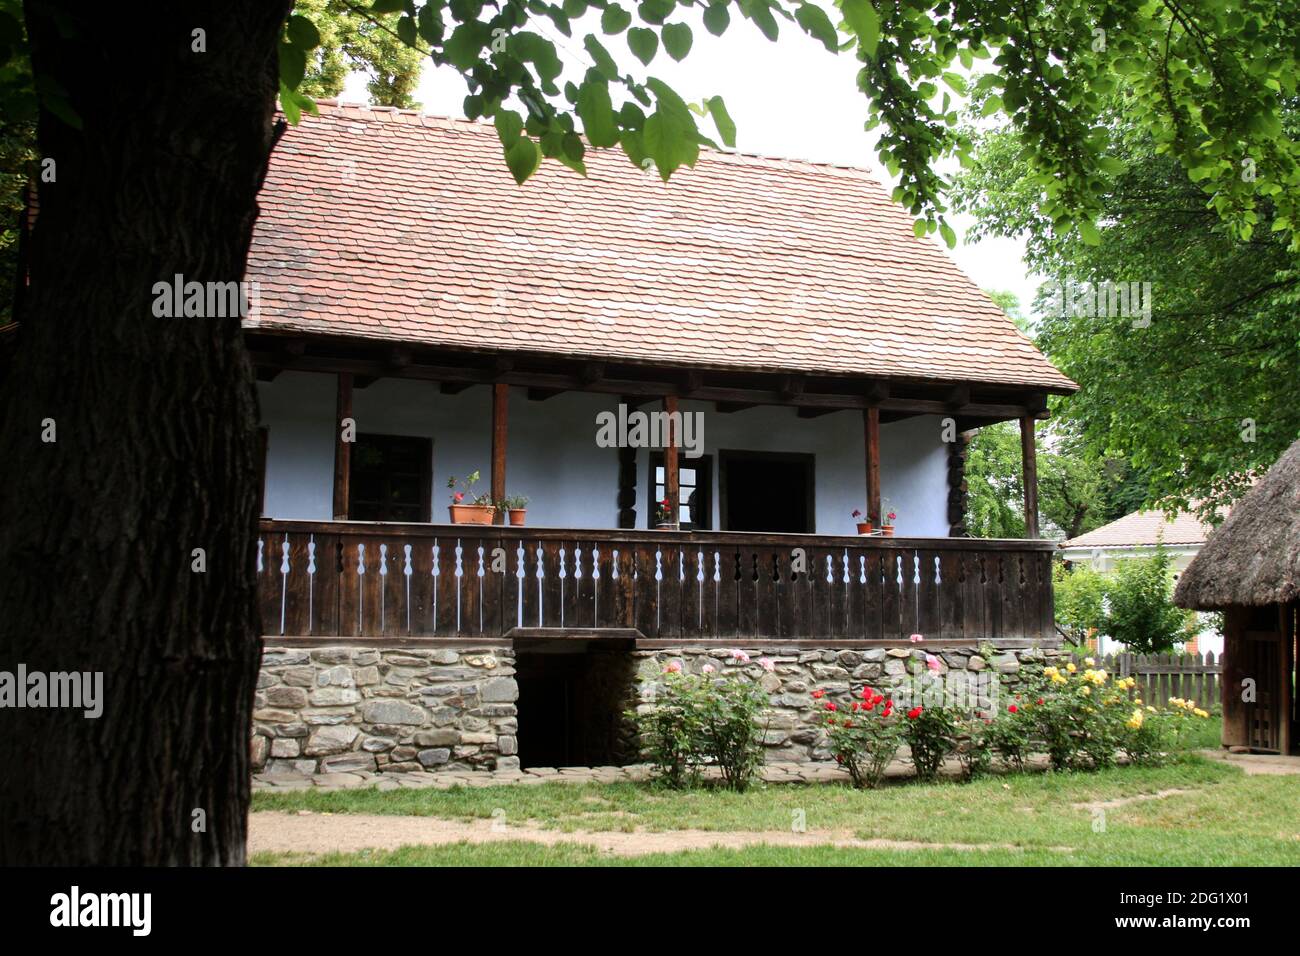 Das Dorfmuseum, Bukarest, Rumänien. Authentisches Haus aus dem 19. Jahrhundert aus Siebenbürgen, mit geschnitzter Holzveranda, Flussfelsen-Fundament und Keller. Stockfoto